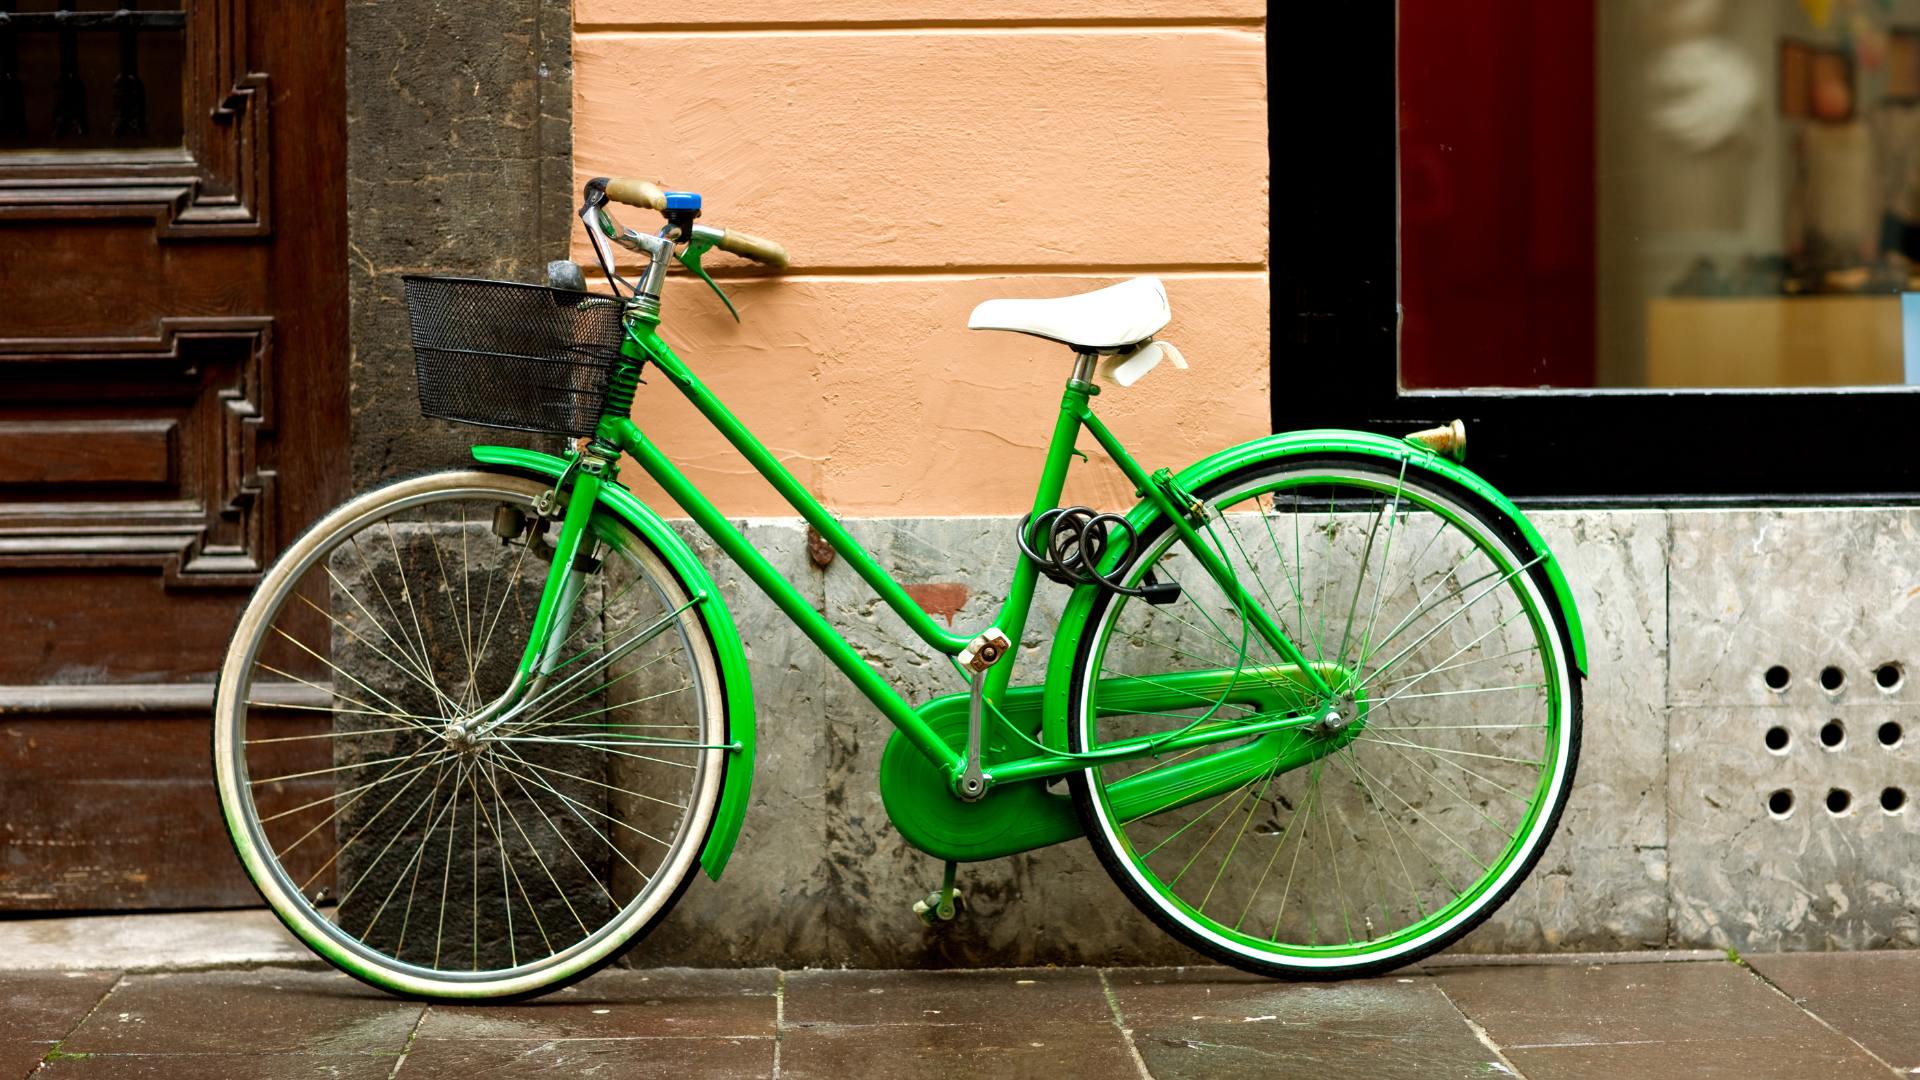 Sonhar com Bicicleta Verde: Qual é o Significado?